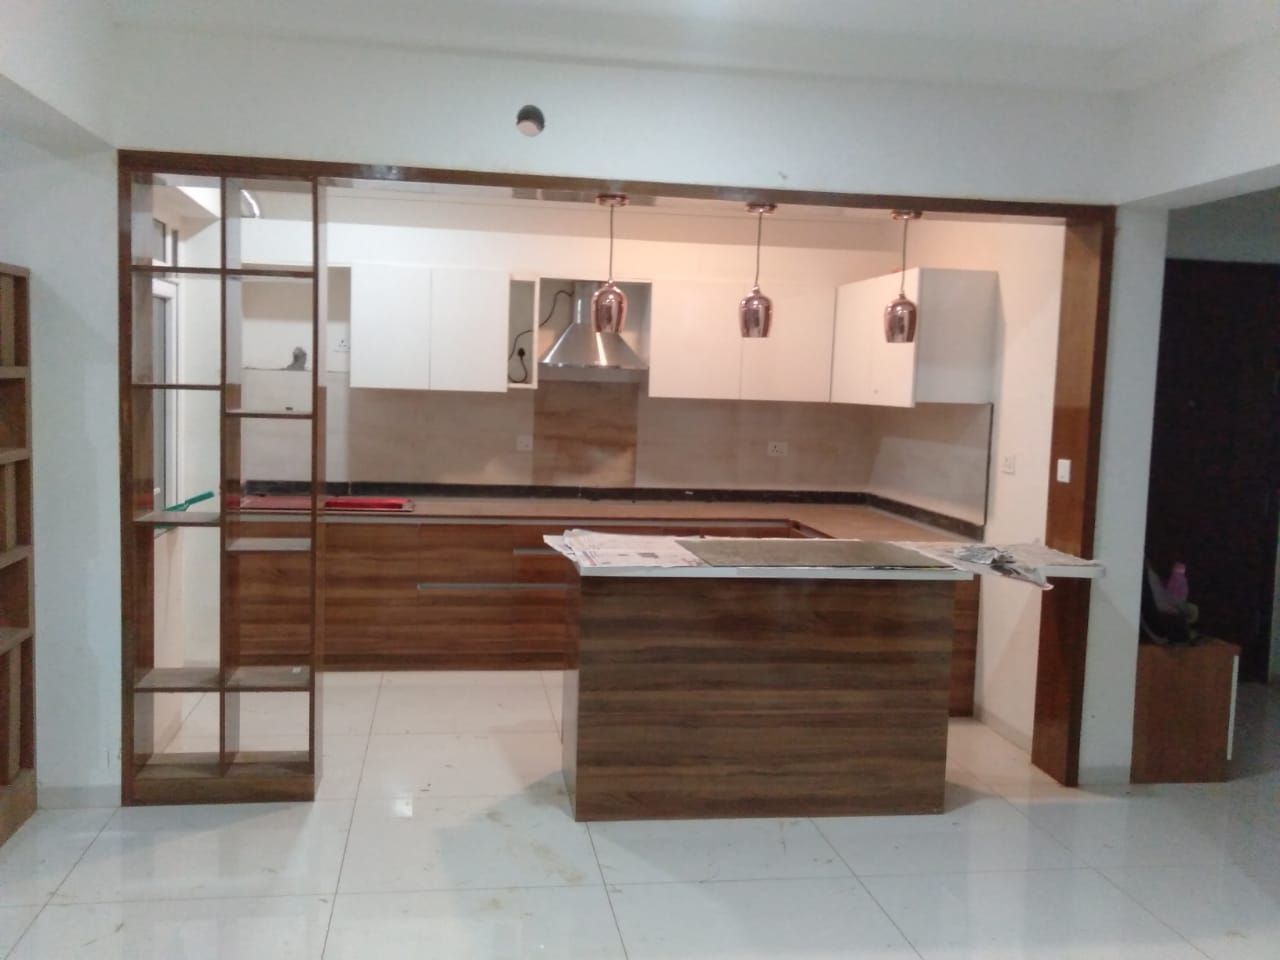 Mr.Unnikrishnan's Residence, Urban Forest, Whitefield, Bangalore, Design Space Design Space Moderne Küchen Sperrholz Schränke und Regale